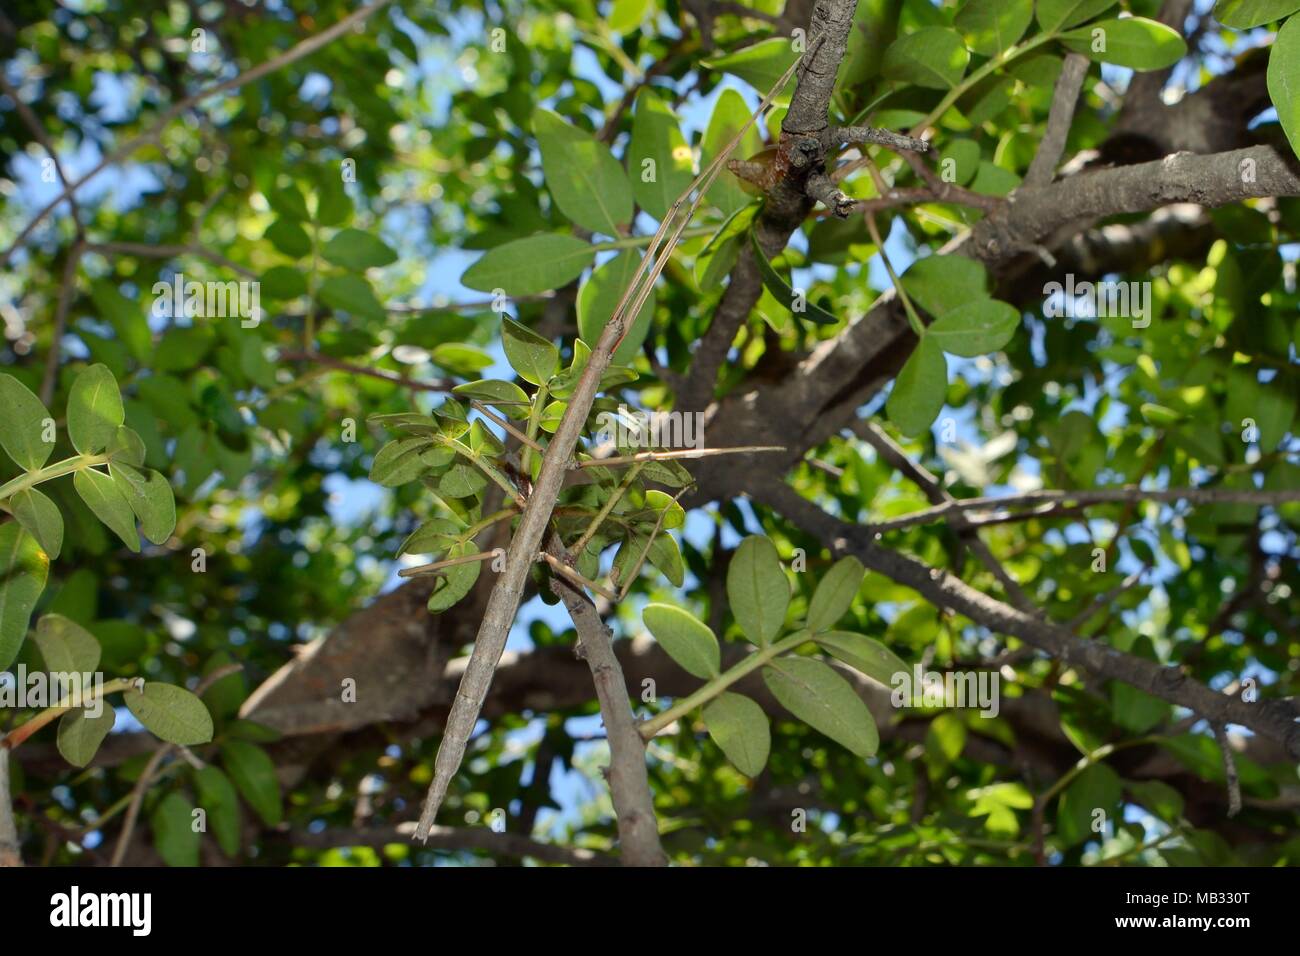 Insecto Palo (Bacillus atticus atticus), especies costeras del sur de Italia y Grecia, en un árbol que crece en la playa, cerca de astros, Arcadia, Grecia. Foto de stock